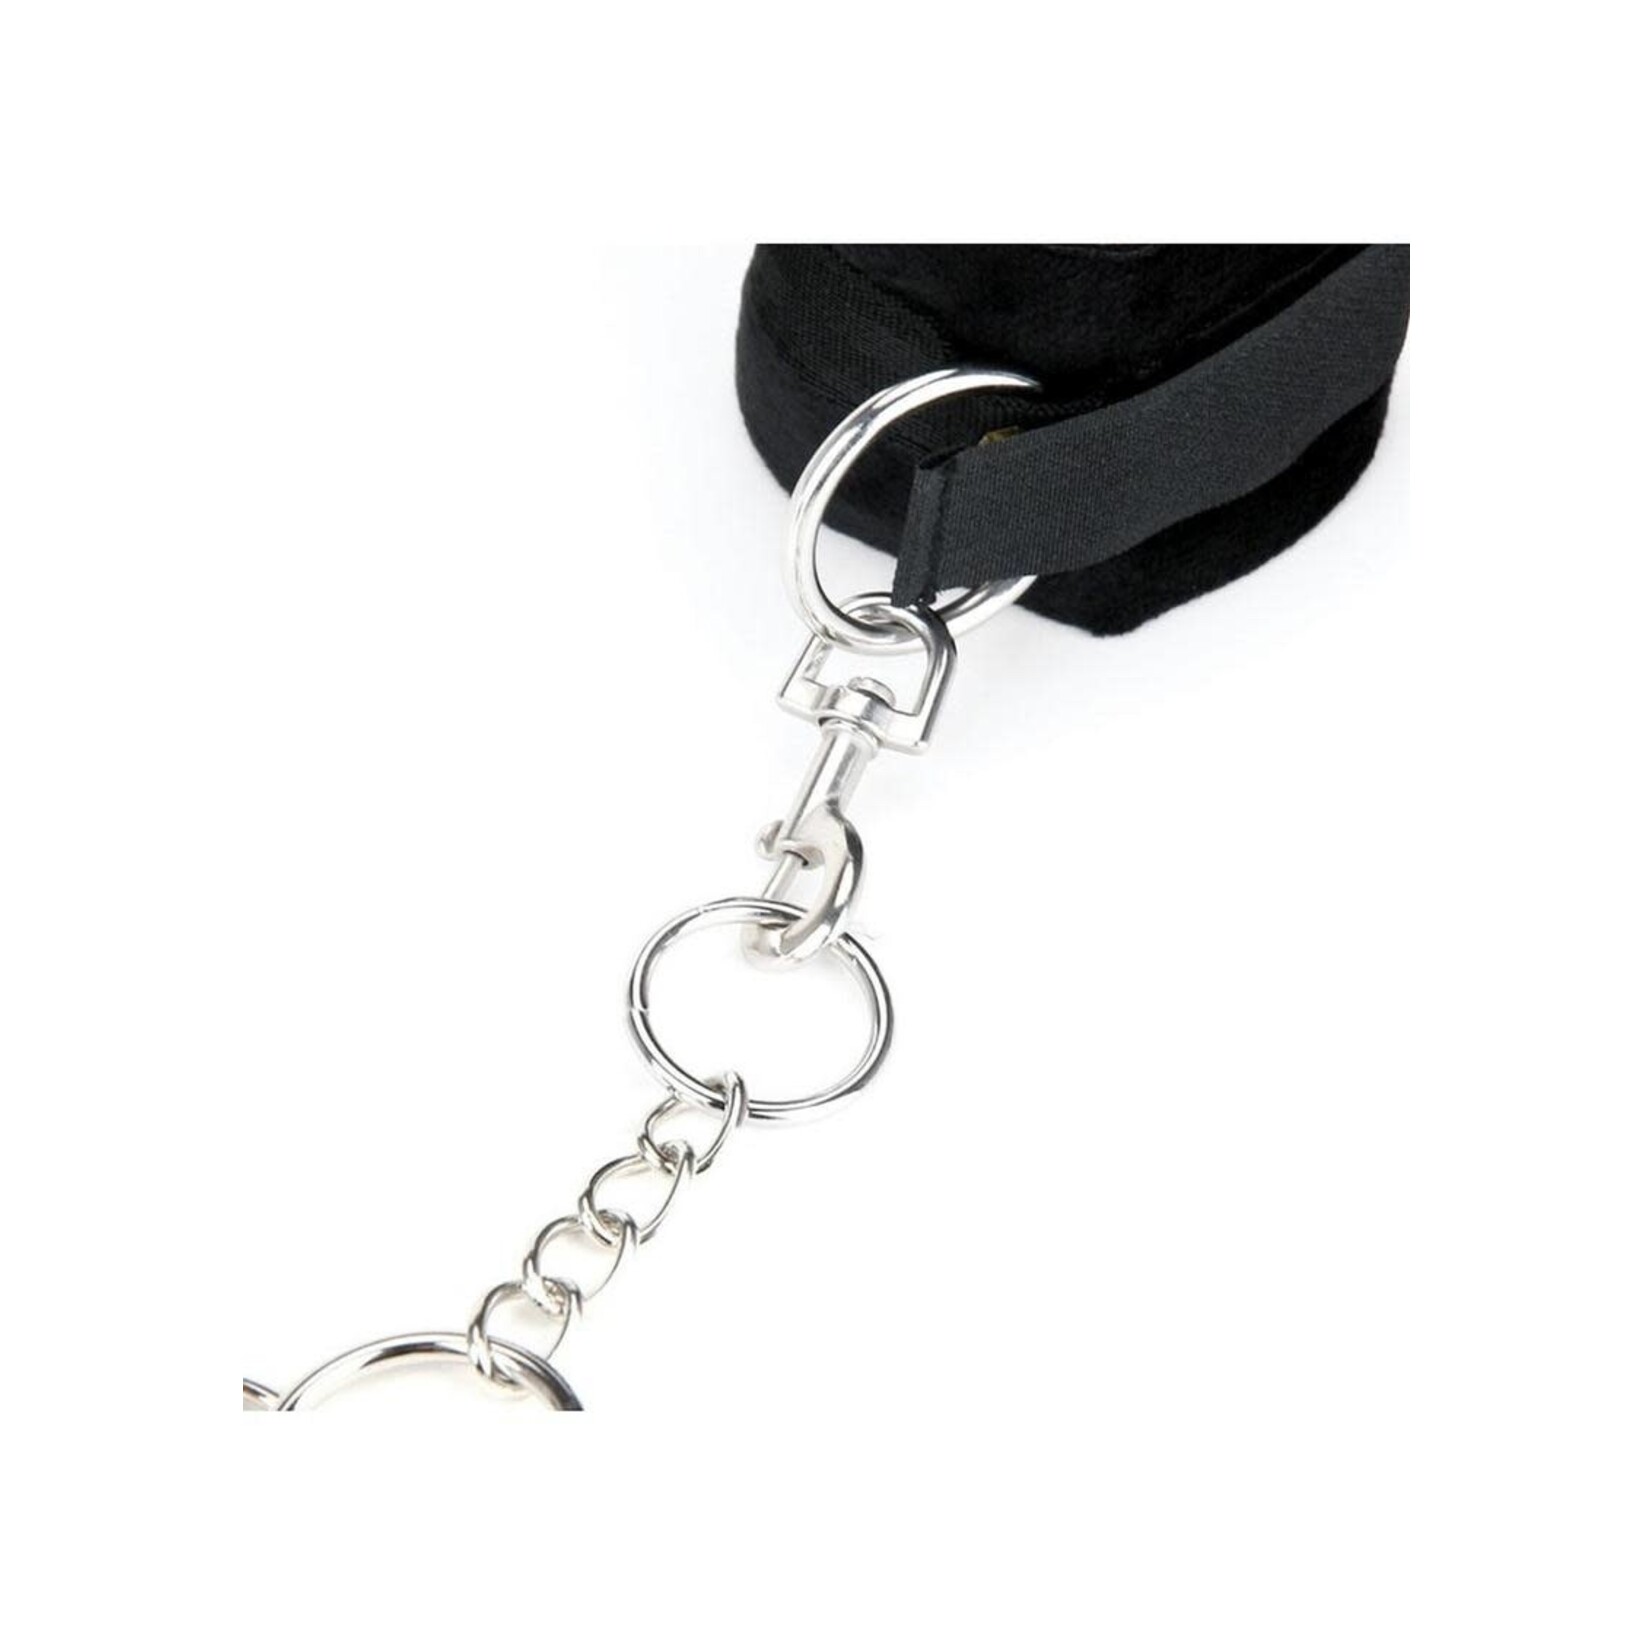 Lux Fetish Hog Tie with 4 Universal Soft Restraint Cuffs - Black